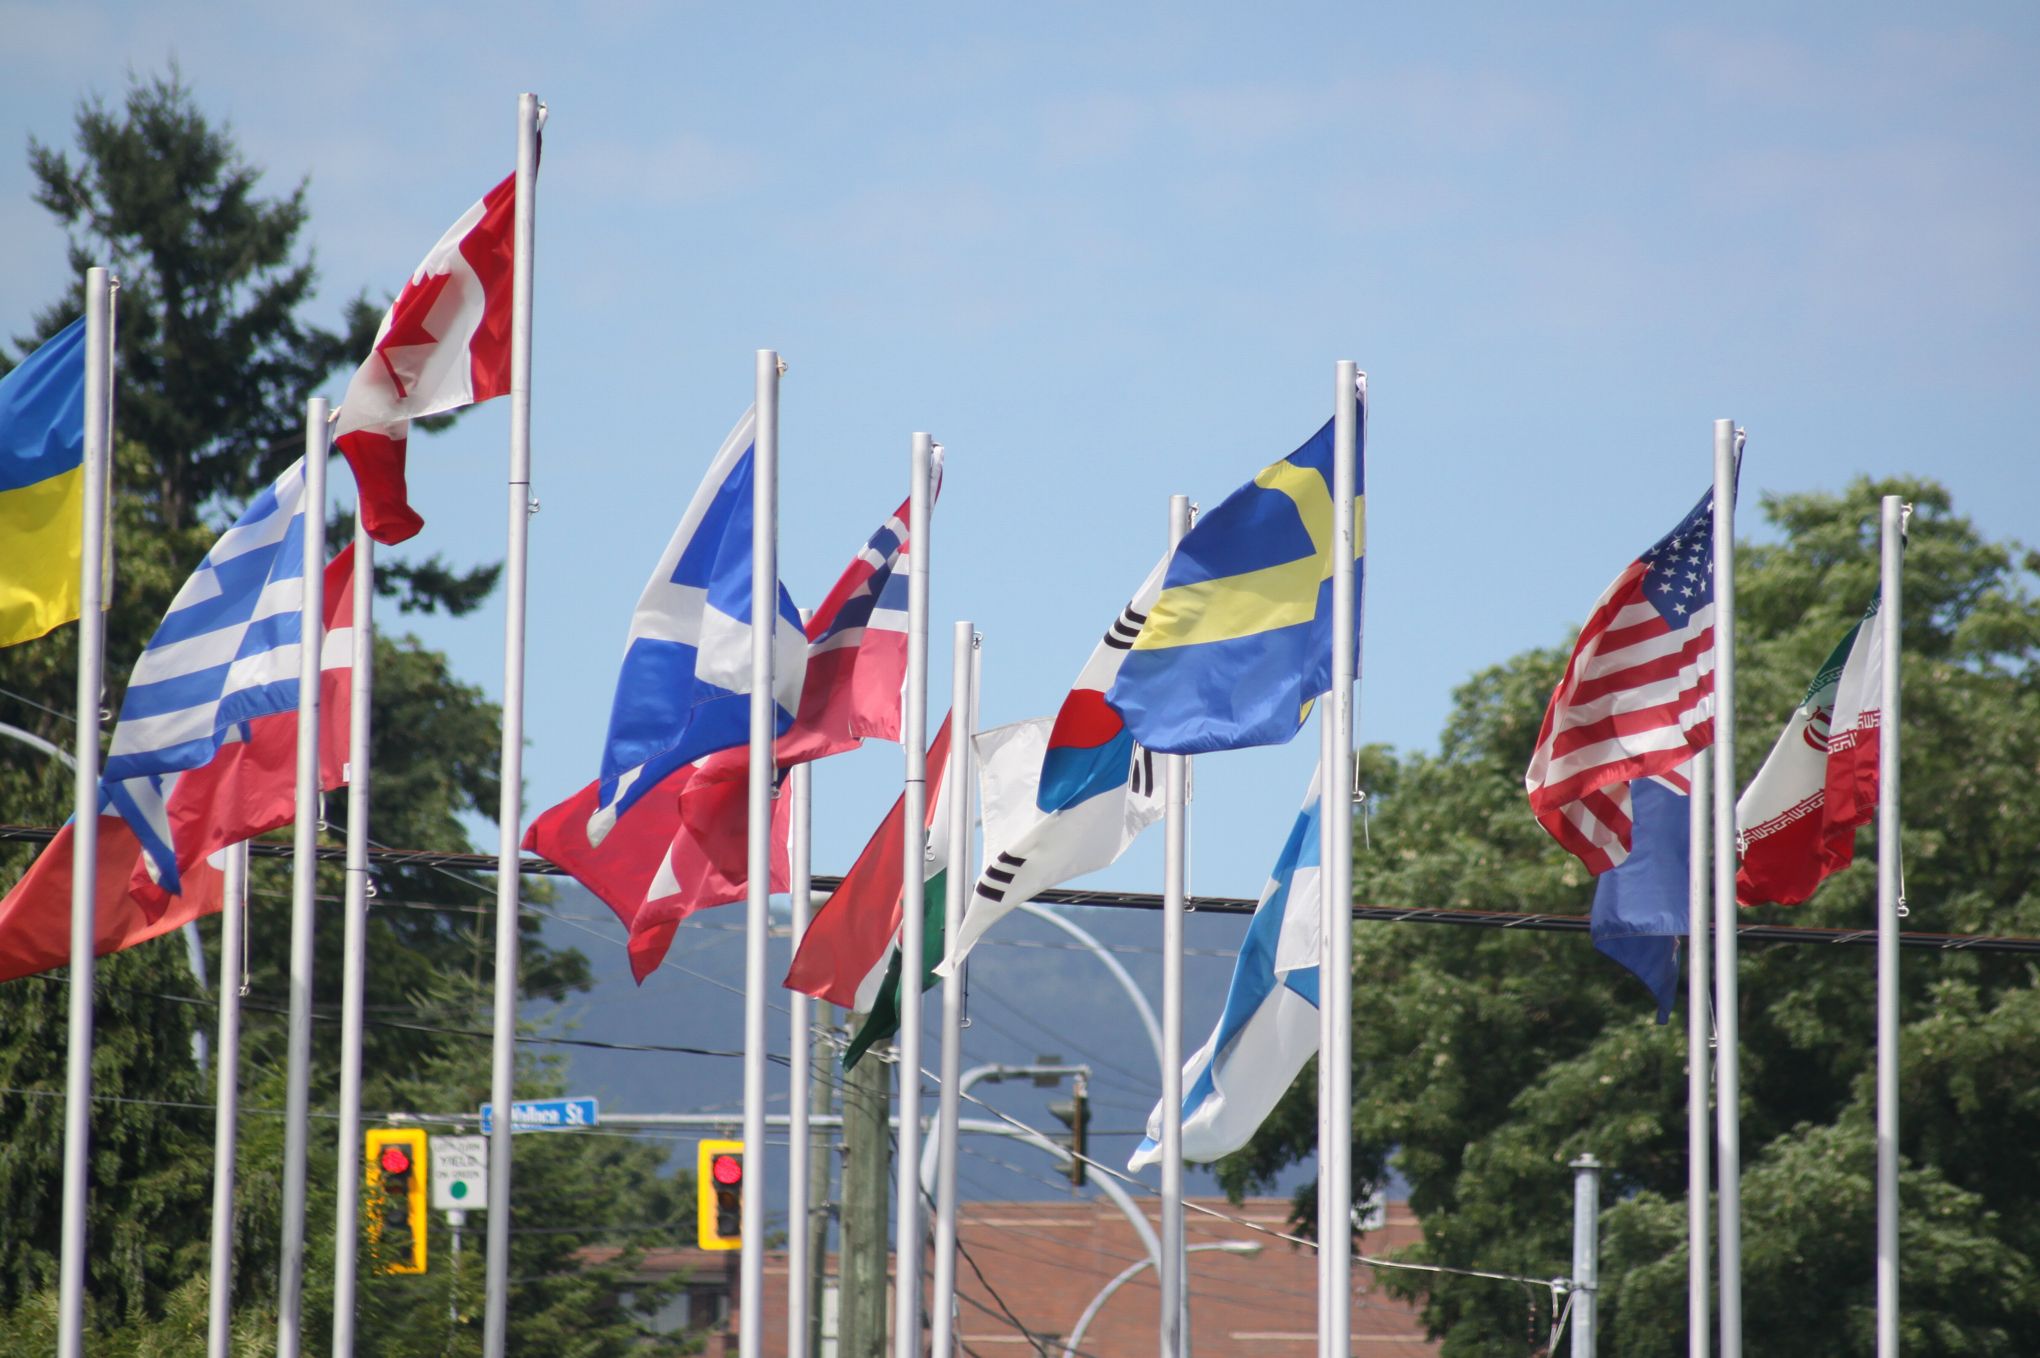 Pourquoi les pays sont-ils représentés par des drapeaux ?